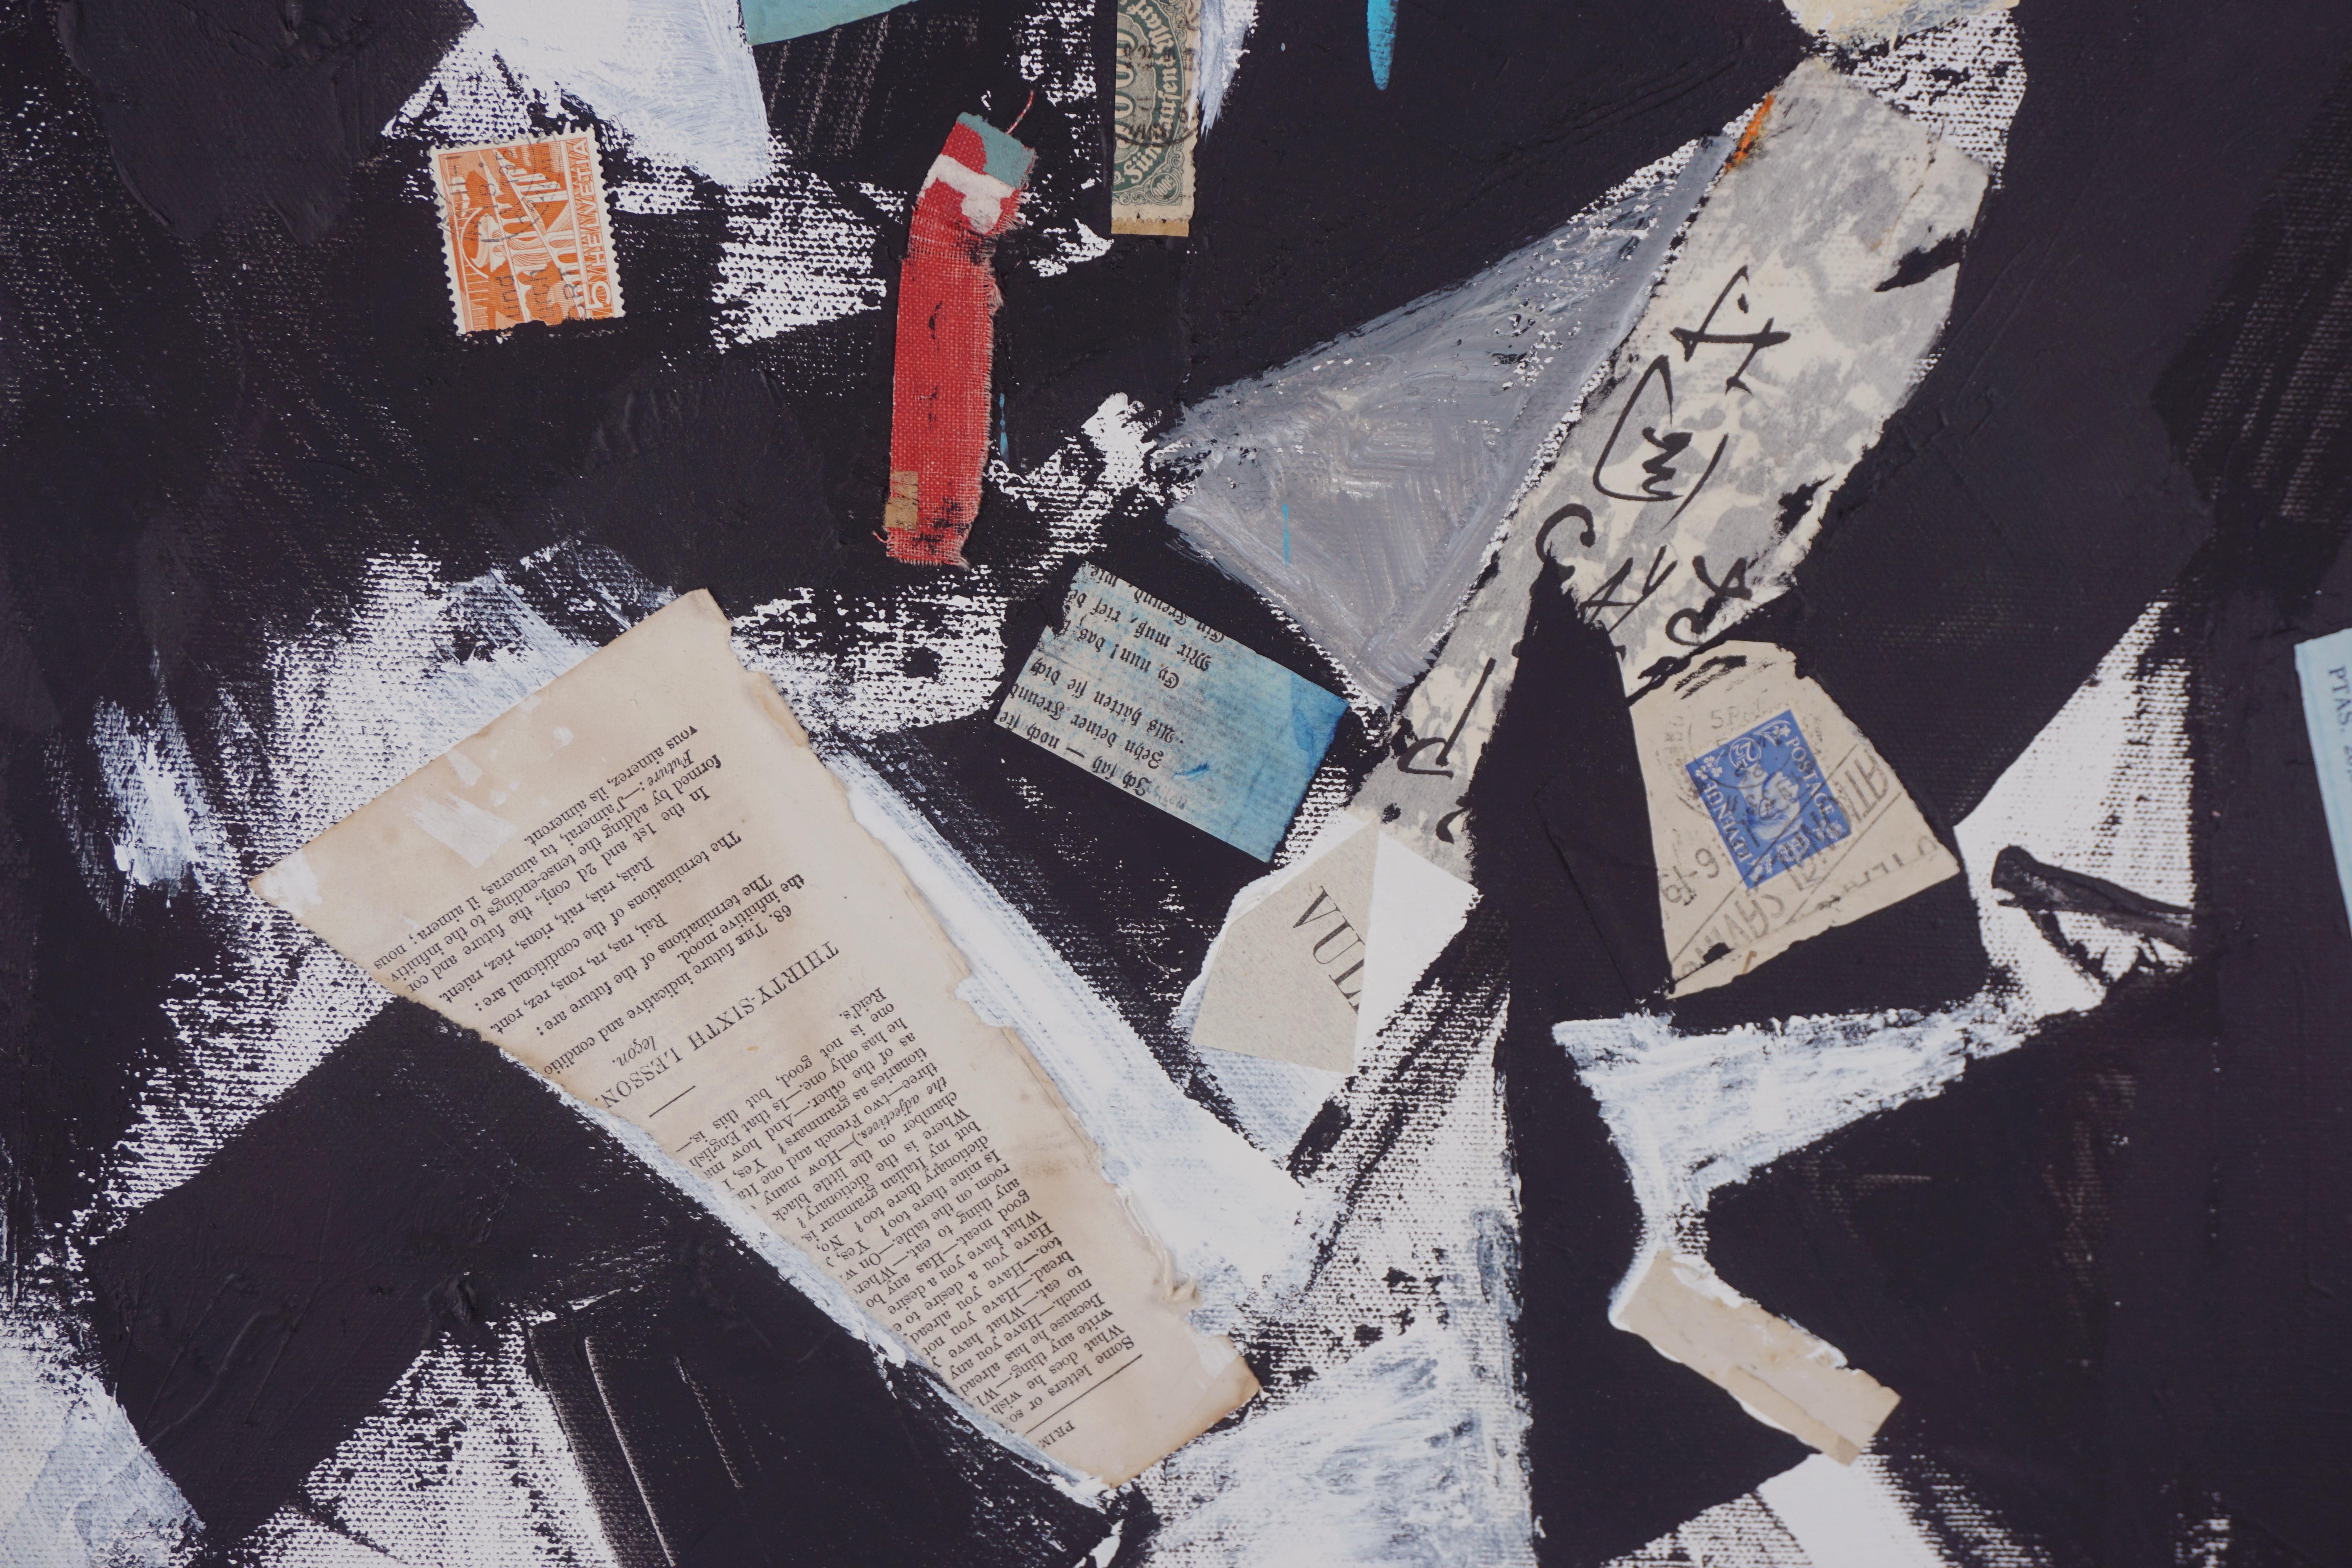 Peinture à l'huile expressionniste abstraite et collage de l'artiste de la Bay Area Michael Pauker (américain, né en 1957). Comprend de la peinture à l'huile en noir et blanc avec des extraits de journaux et des timbres. Extrait d'une collection de